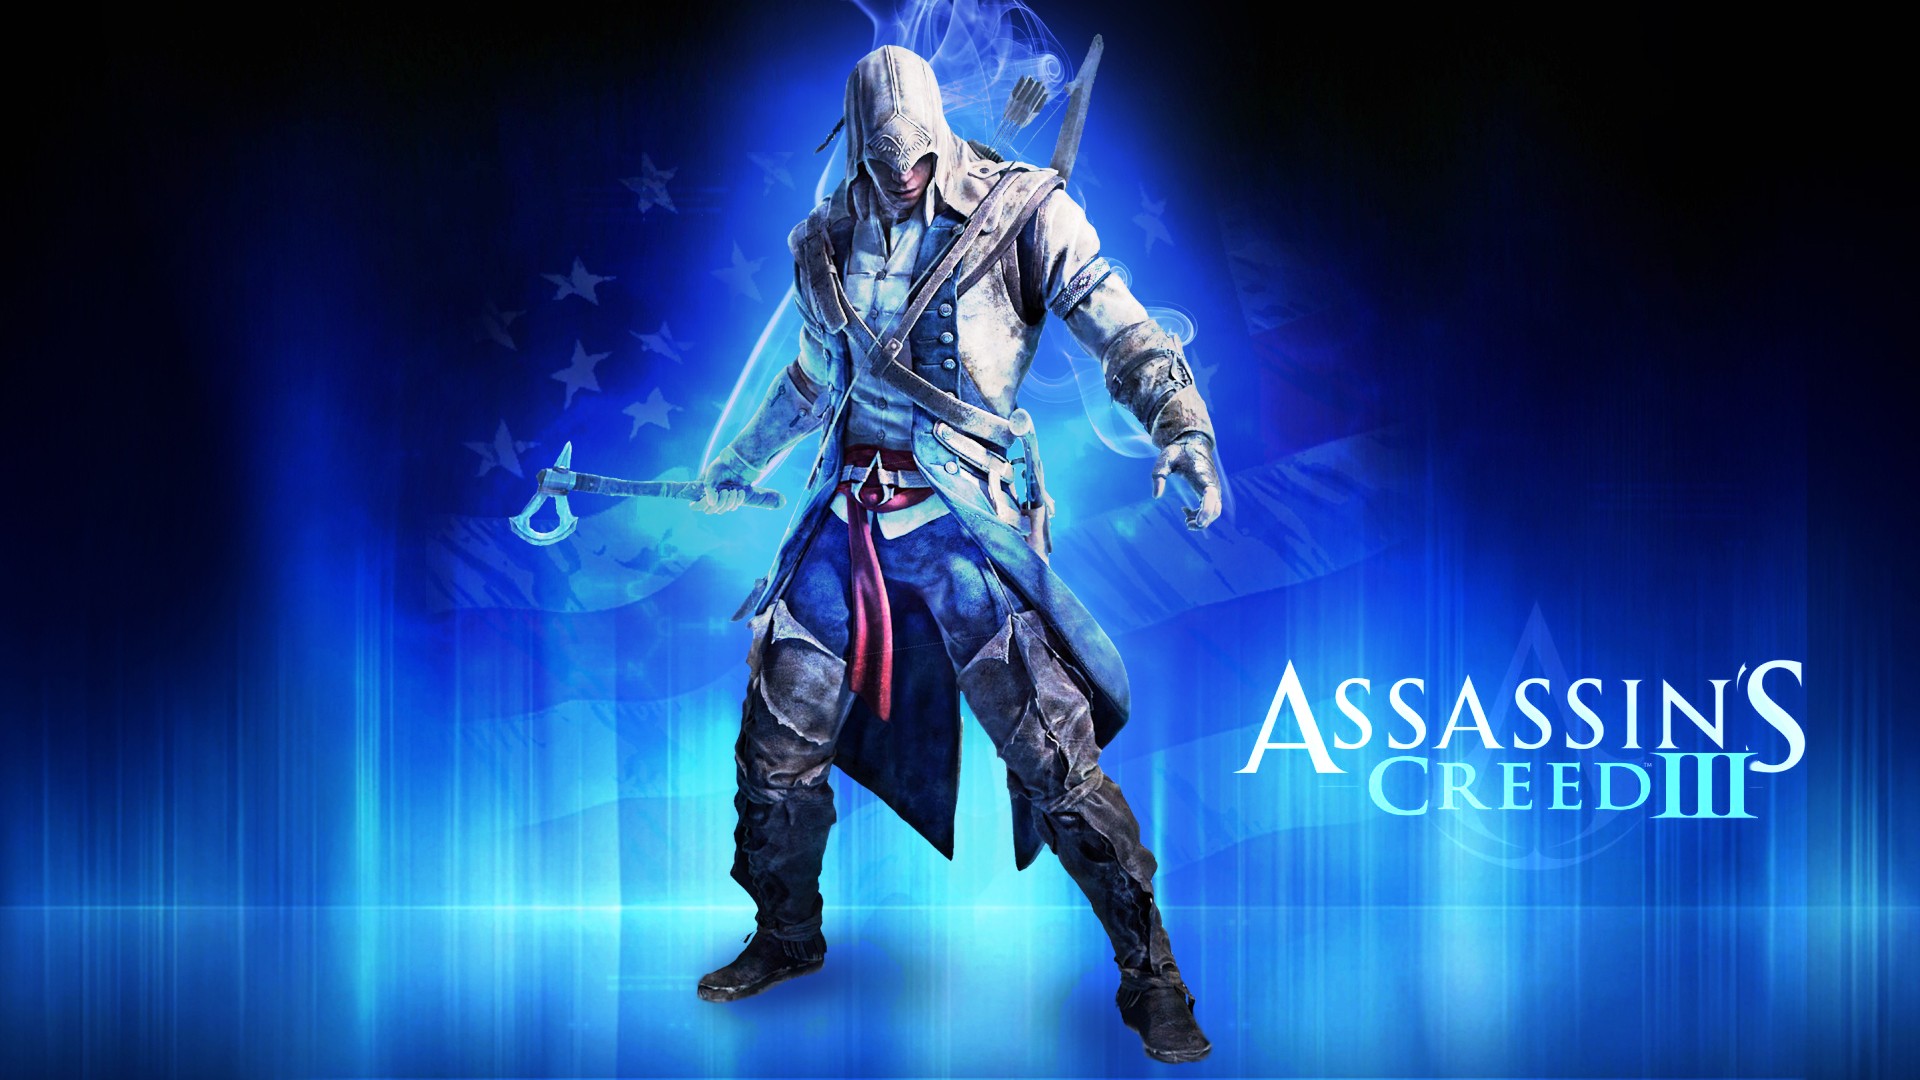 video games, blue, assassin, Assassins Creed, Assassins Creed 3, fan art - desktop wallpaper